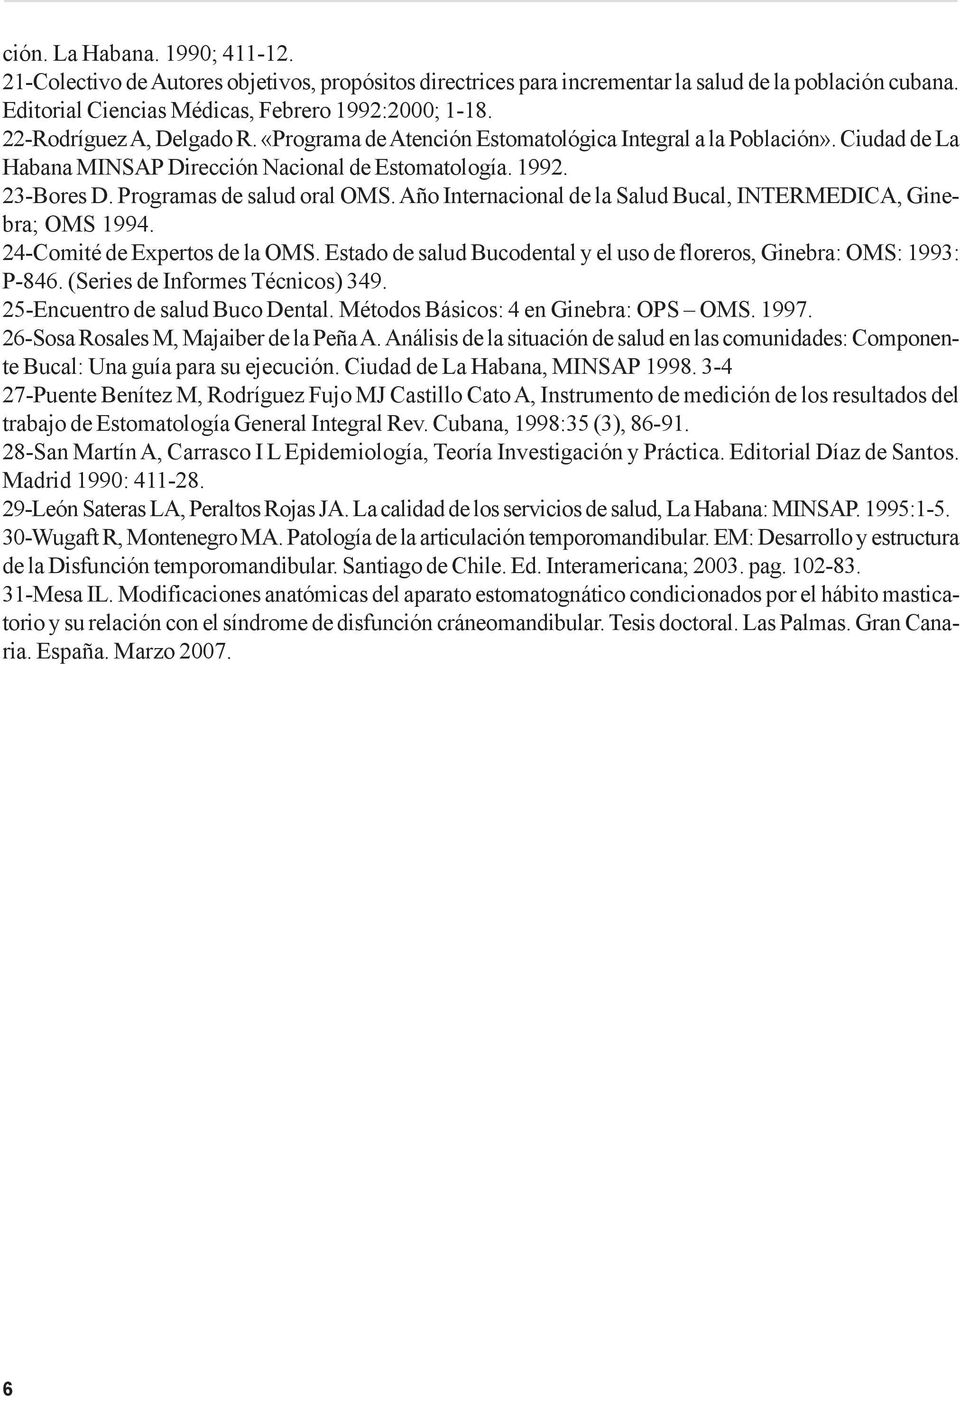 Año Internacional de la Salud Bucal, INTERMEDICA, Ginebra; OMS 1994. 24-Comité de Expertos de la OMS. Estado de salud Bucodental y el uso de floreros, Ginebra: OMS: 1993: P-846.